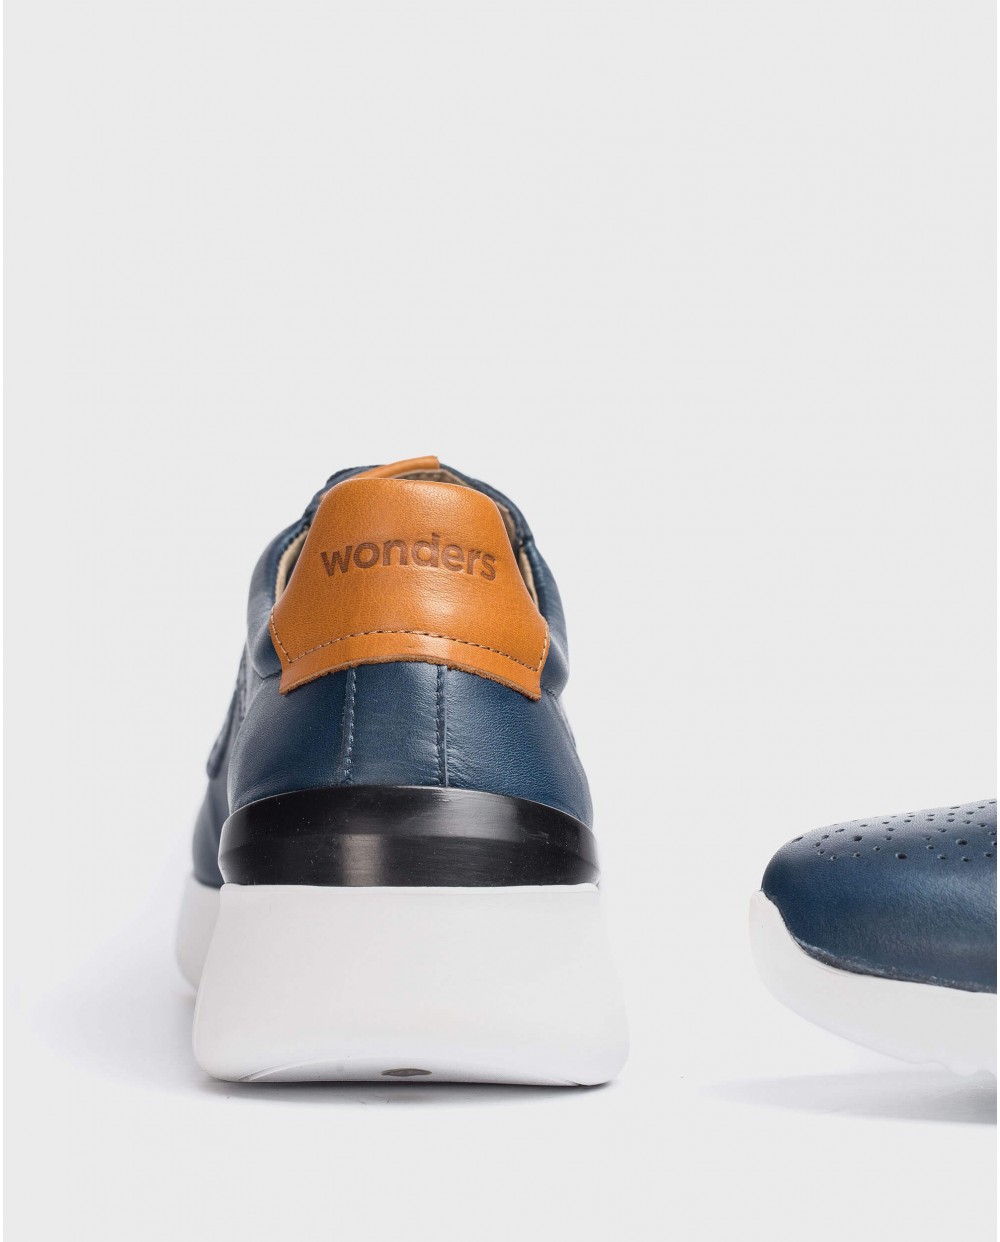 Wonders-Sneakers-Perforated leather sneaker